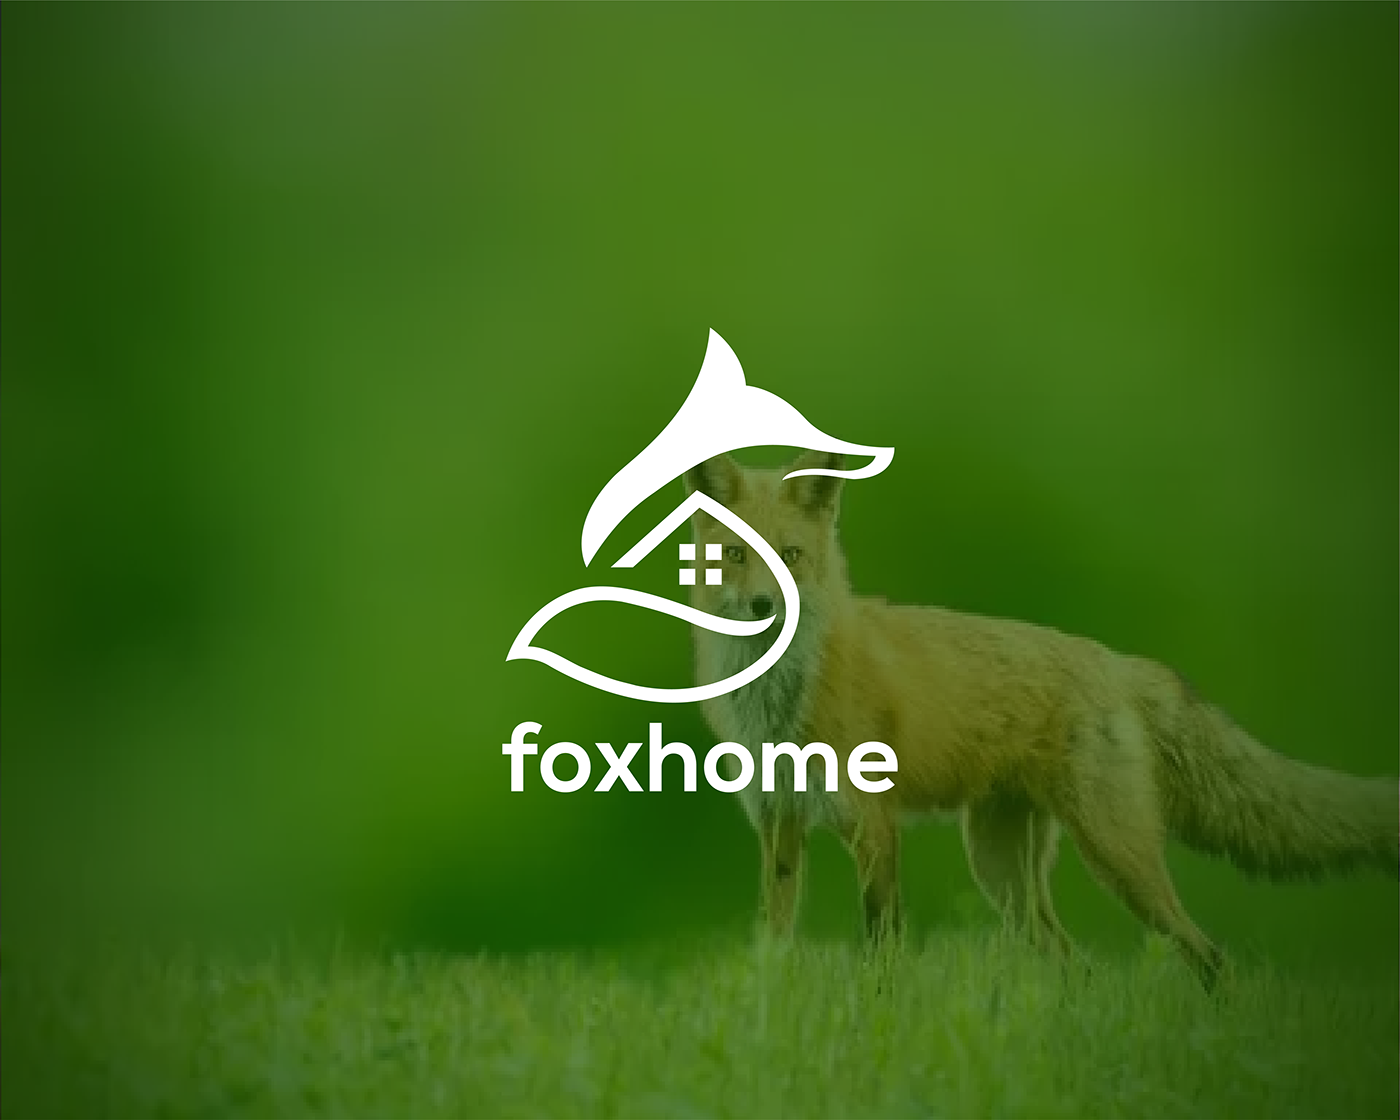 animallogo construction logo foxhome logo FoxLogo home Mortgage property logo real estate roofing